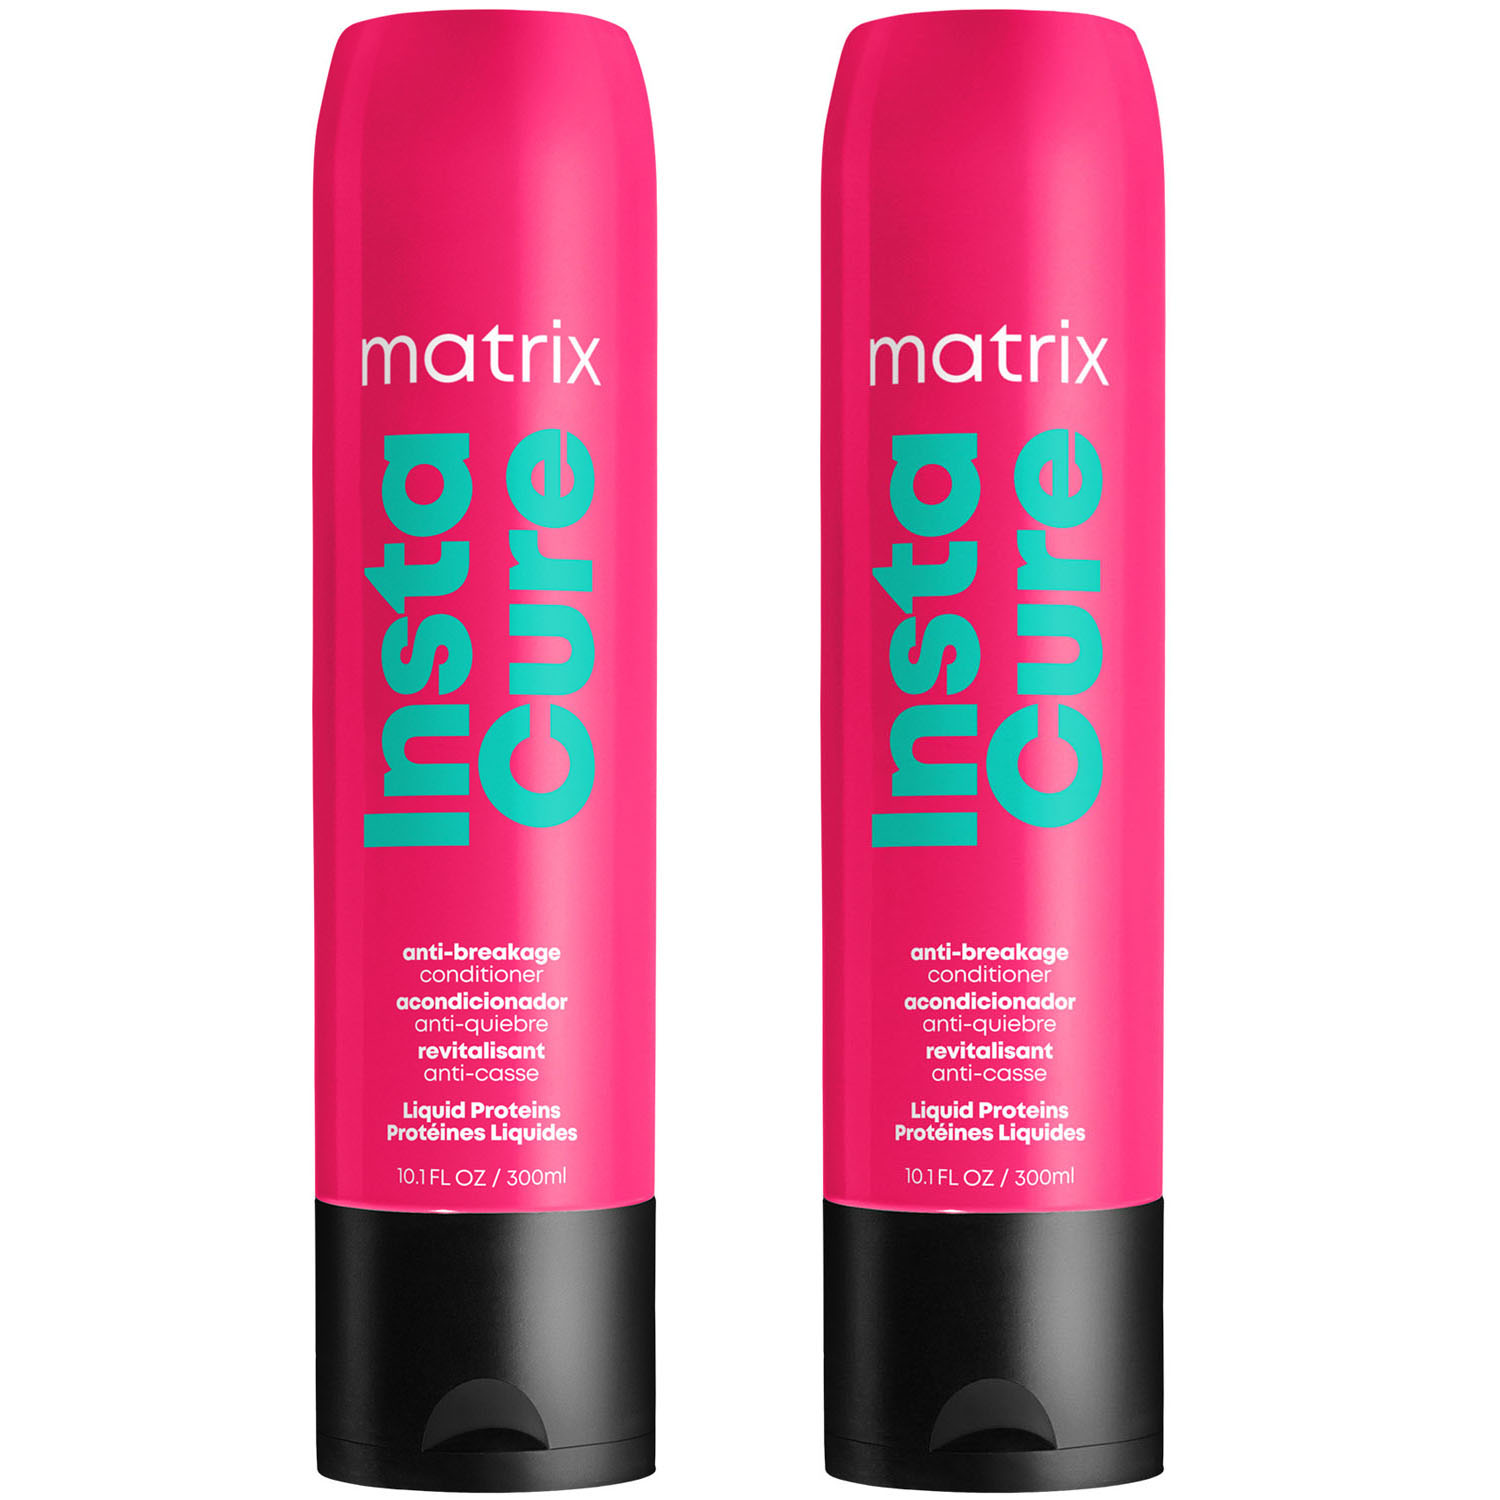 Matrix Профессиональный кондиционер Instacure для восстановления волос с жидким протеином, 300 мл х 2 шт (Matrix, Total Results) кондиционер против ломкости instacure 1000 мл